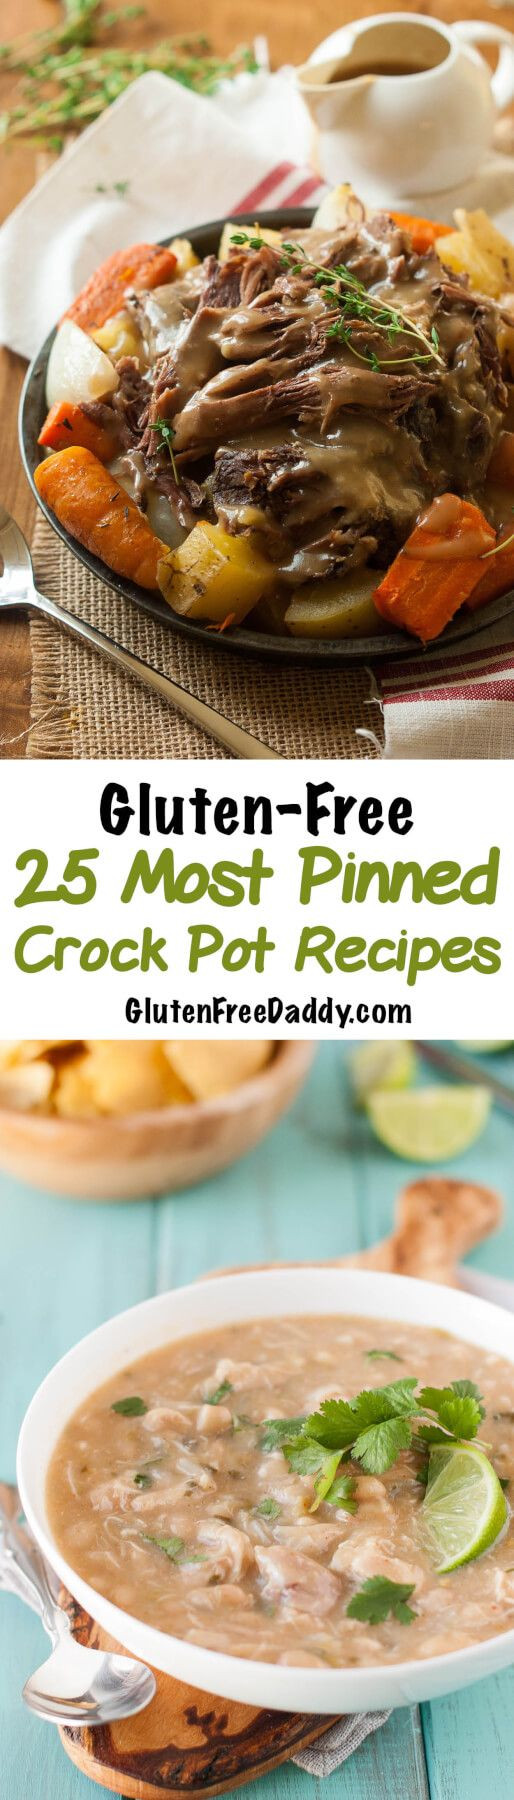 Healthy Gluten Free Crock Pot Recipes
 Best 25 Gluten free ideas on Pinterest